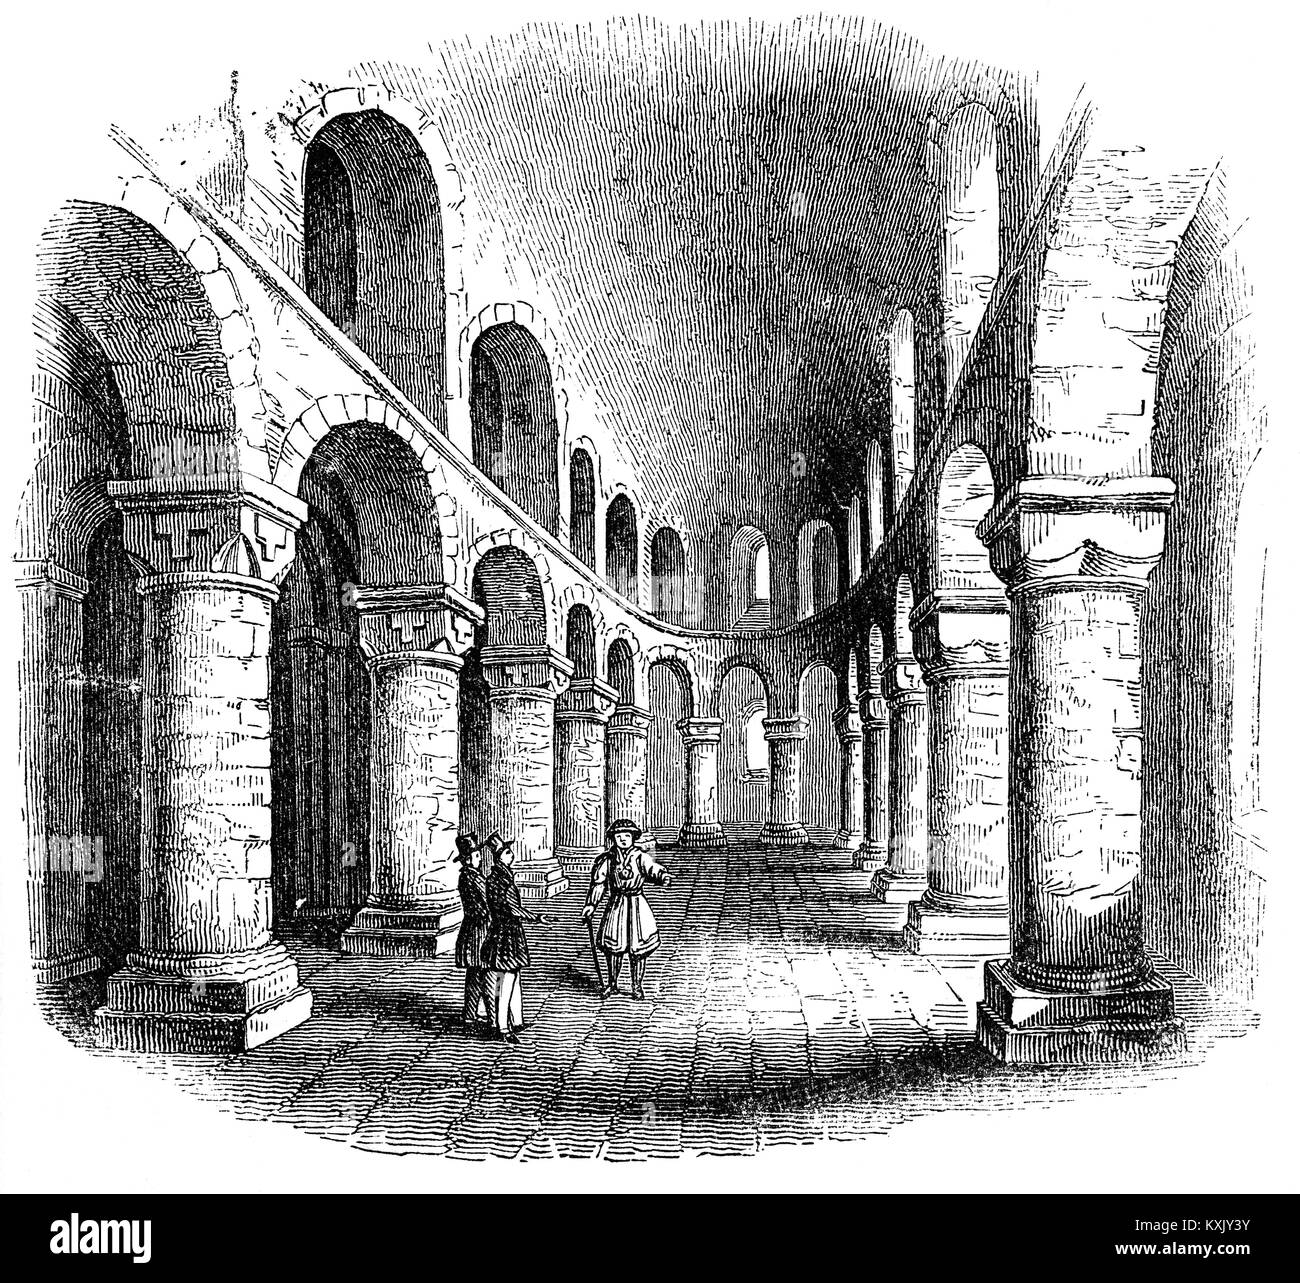 Die romanische St. Johannes Kapelle befindet sich im zweiten Stock des Weißen Turm, im Tower von London. Es wurde in 1077 gebaut - 97 Als behalten oder Zitadelle, der älteste Teil von William mächtige Festung der Eroberer. Es war aus Stein aus Frankreich importierte konstruiert und verfügt über einen Tunnel - gewölbte Kirchenschiff mit einer Apsis und Leiste - gewölbte Gänge, und die Galerie über Kurven um die Apsis. Dicke, runde piers Unterstützung unmolded Bögen, durch ihre Einfachheit, mit einfachen Schnitzereien von Jakobsmuscheln und Blatt Designs, die nur Dekoration. Stockfoto